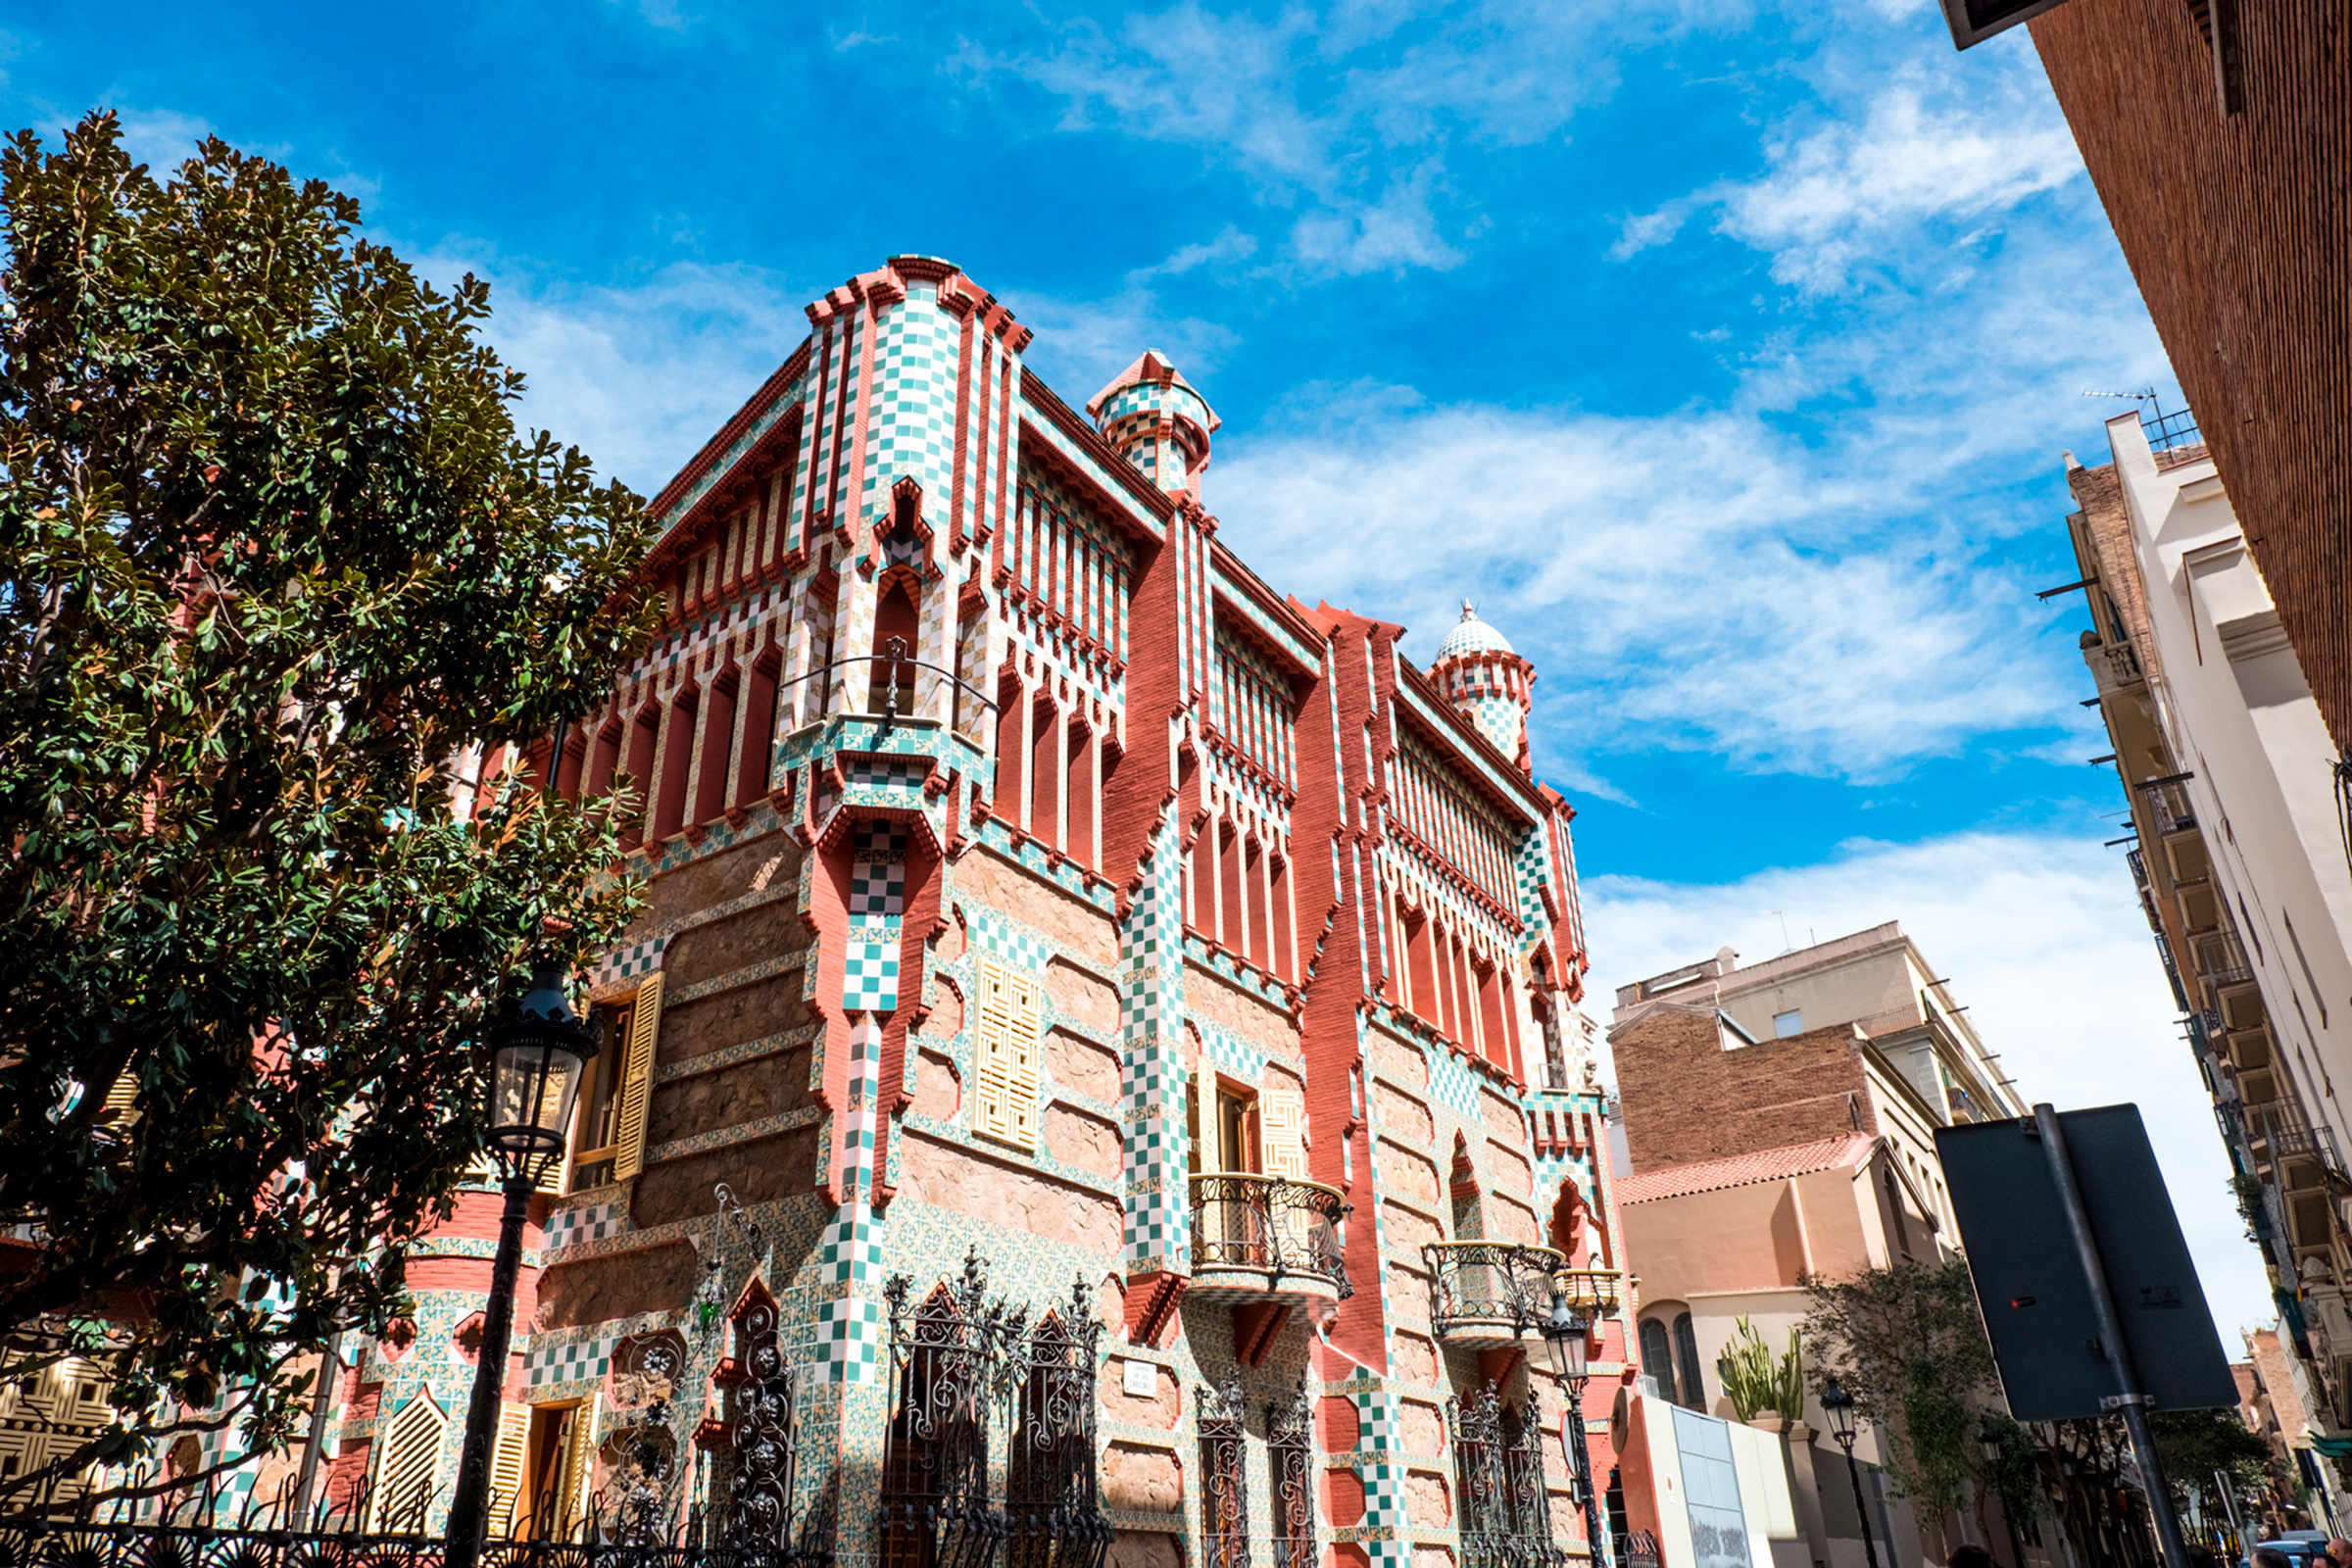 Частный дом, построенный по проекту архитектора Антони Гауди в районе Грасия в Барселоне. Здание стало первым крупным заказом Гауди, его строительство началось в 1883 году и закончилось спустя пять лет, в 1888-м. Сейчас Дом Висенс открыт для посещения
